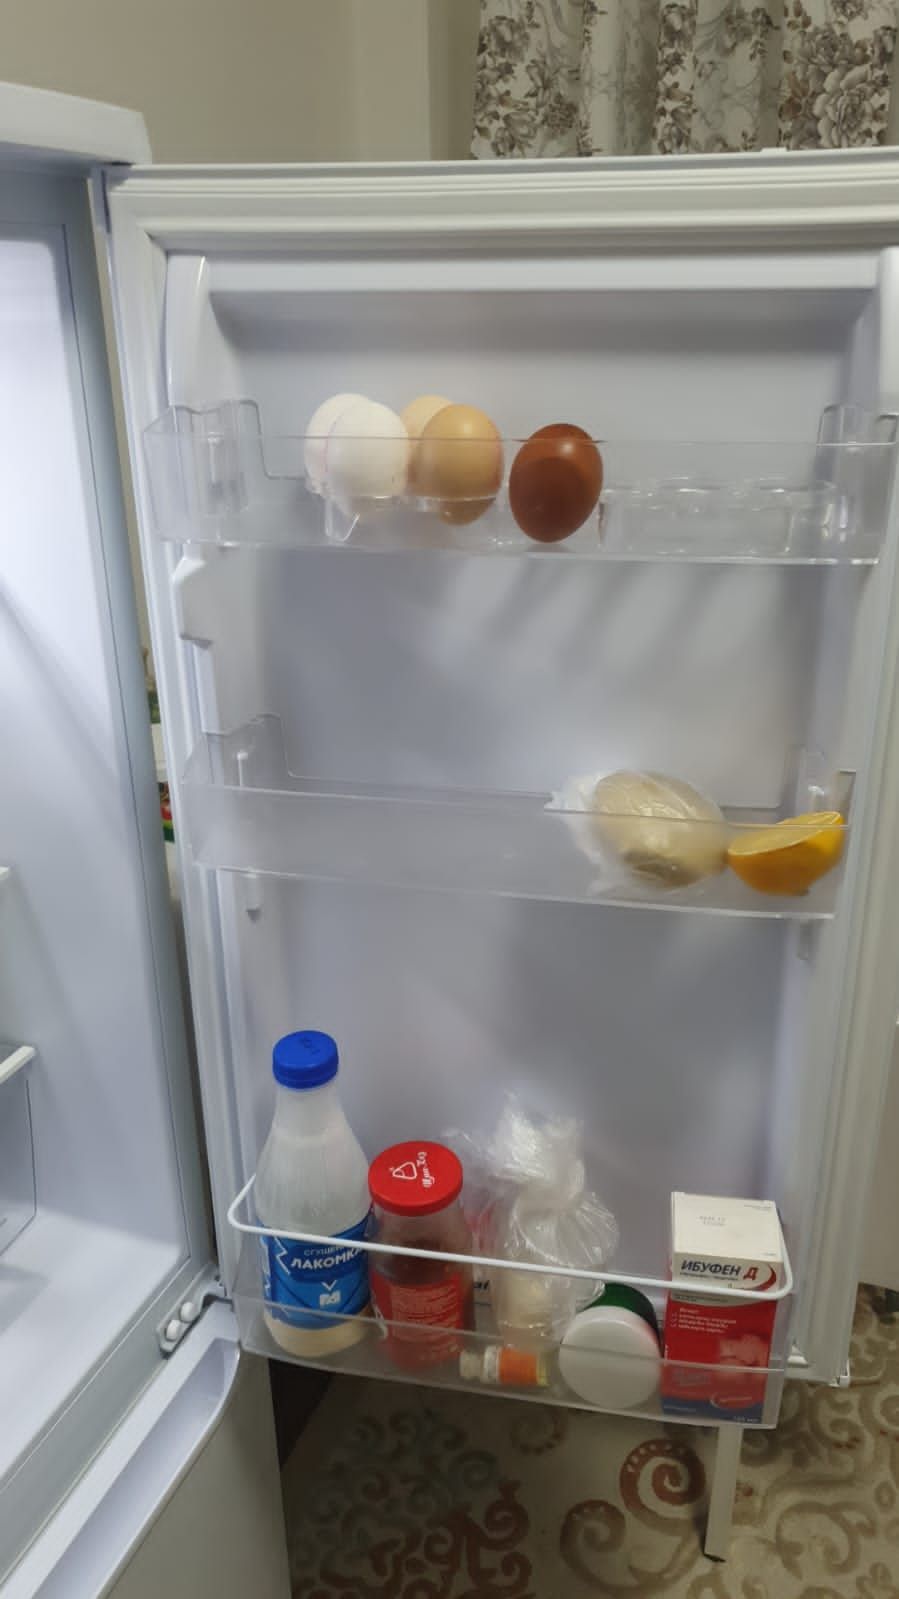 Холодилник исползовали только 2 месяца